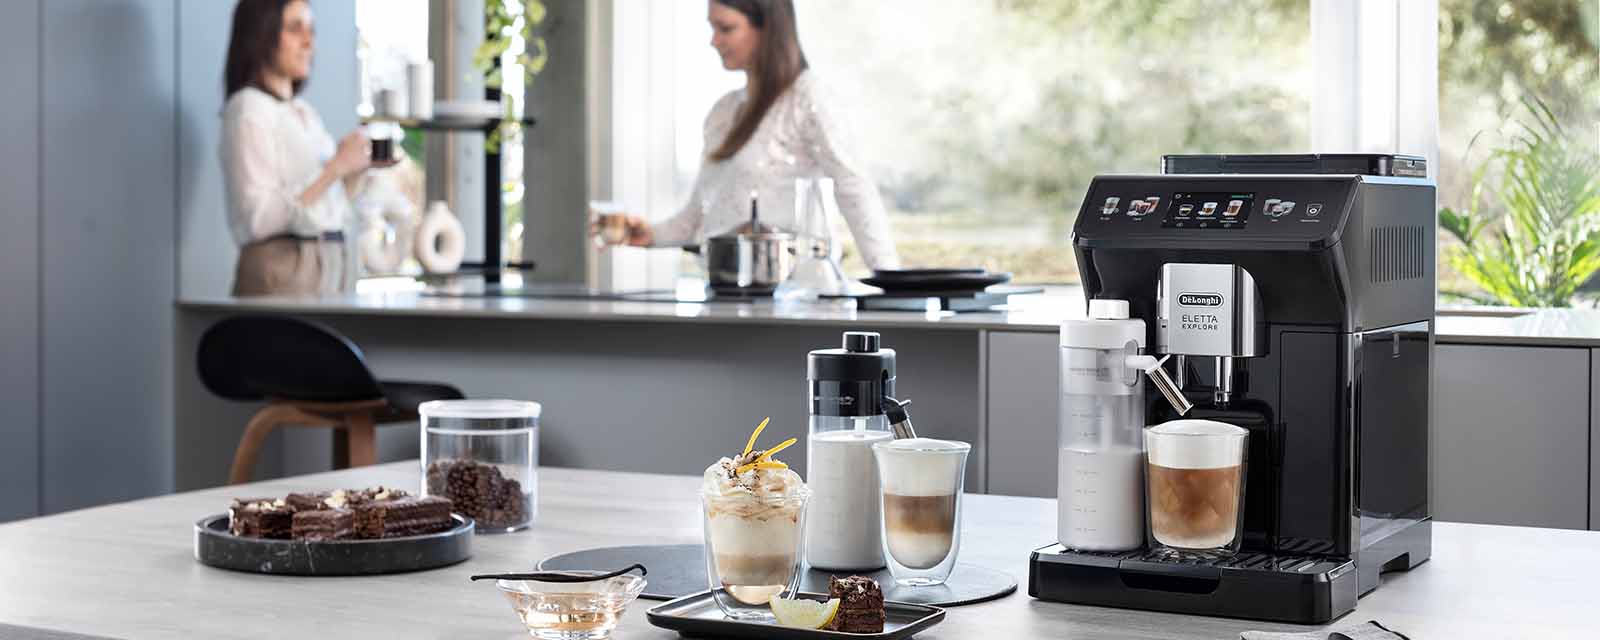 DeLonghi Eletta Explore Coffee Machine review